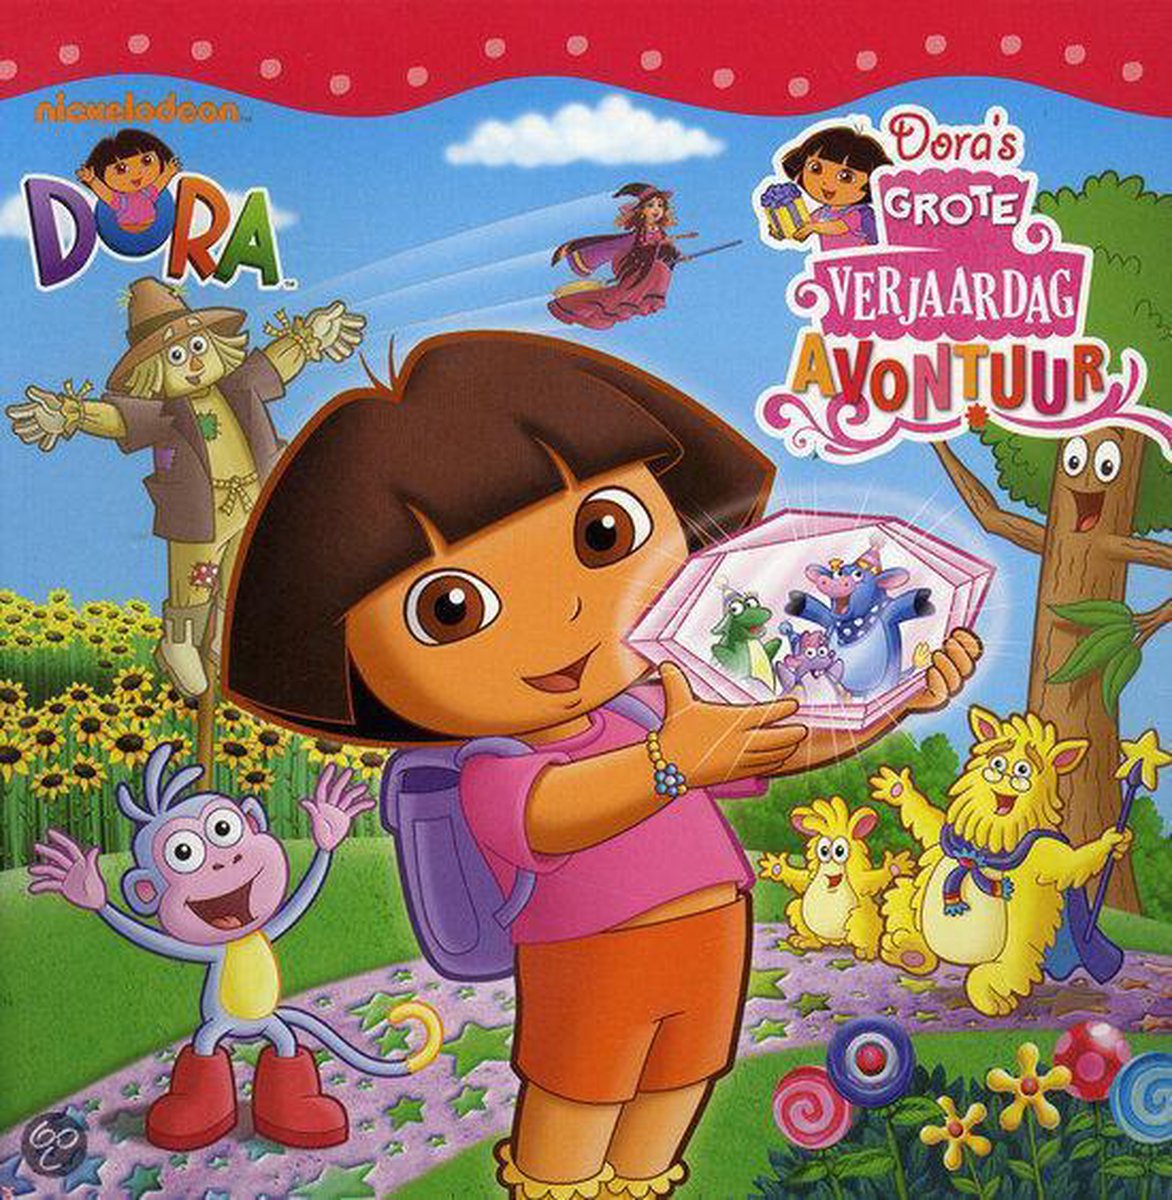 Dora's grote verjaardagsavontuur / Dora